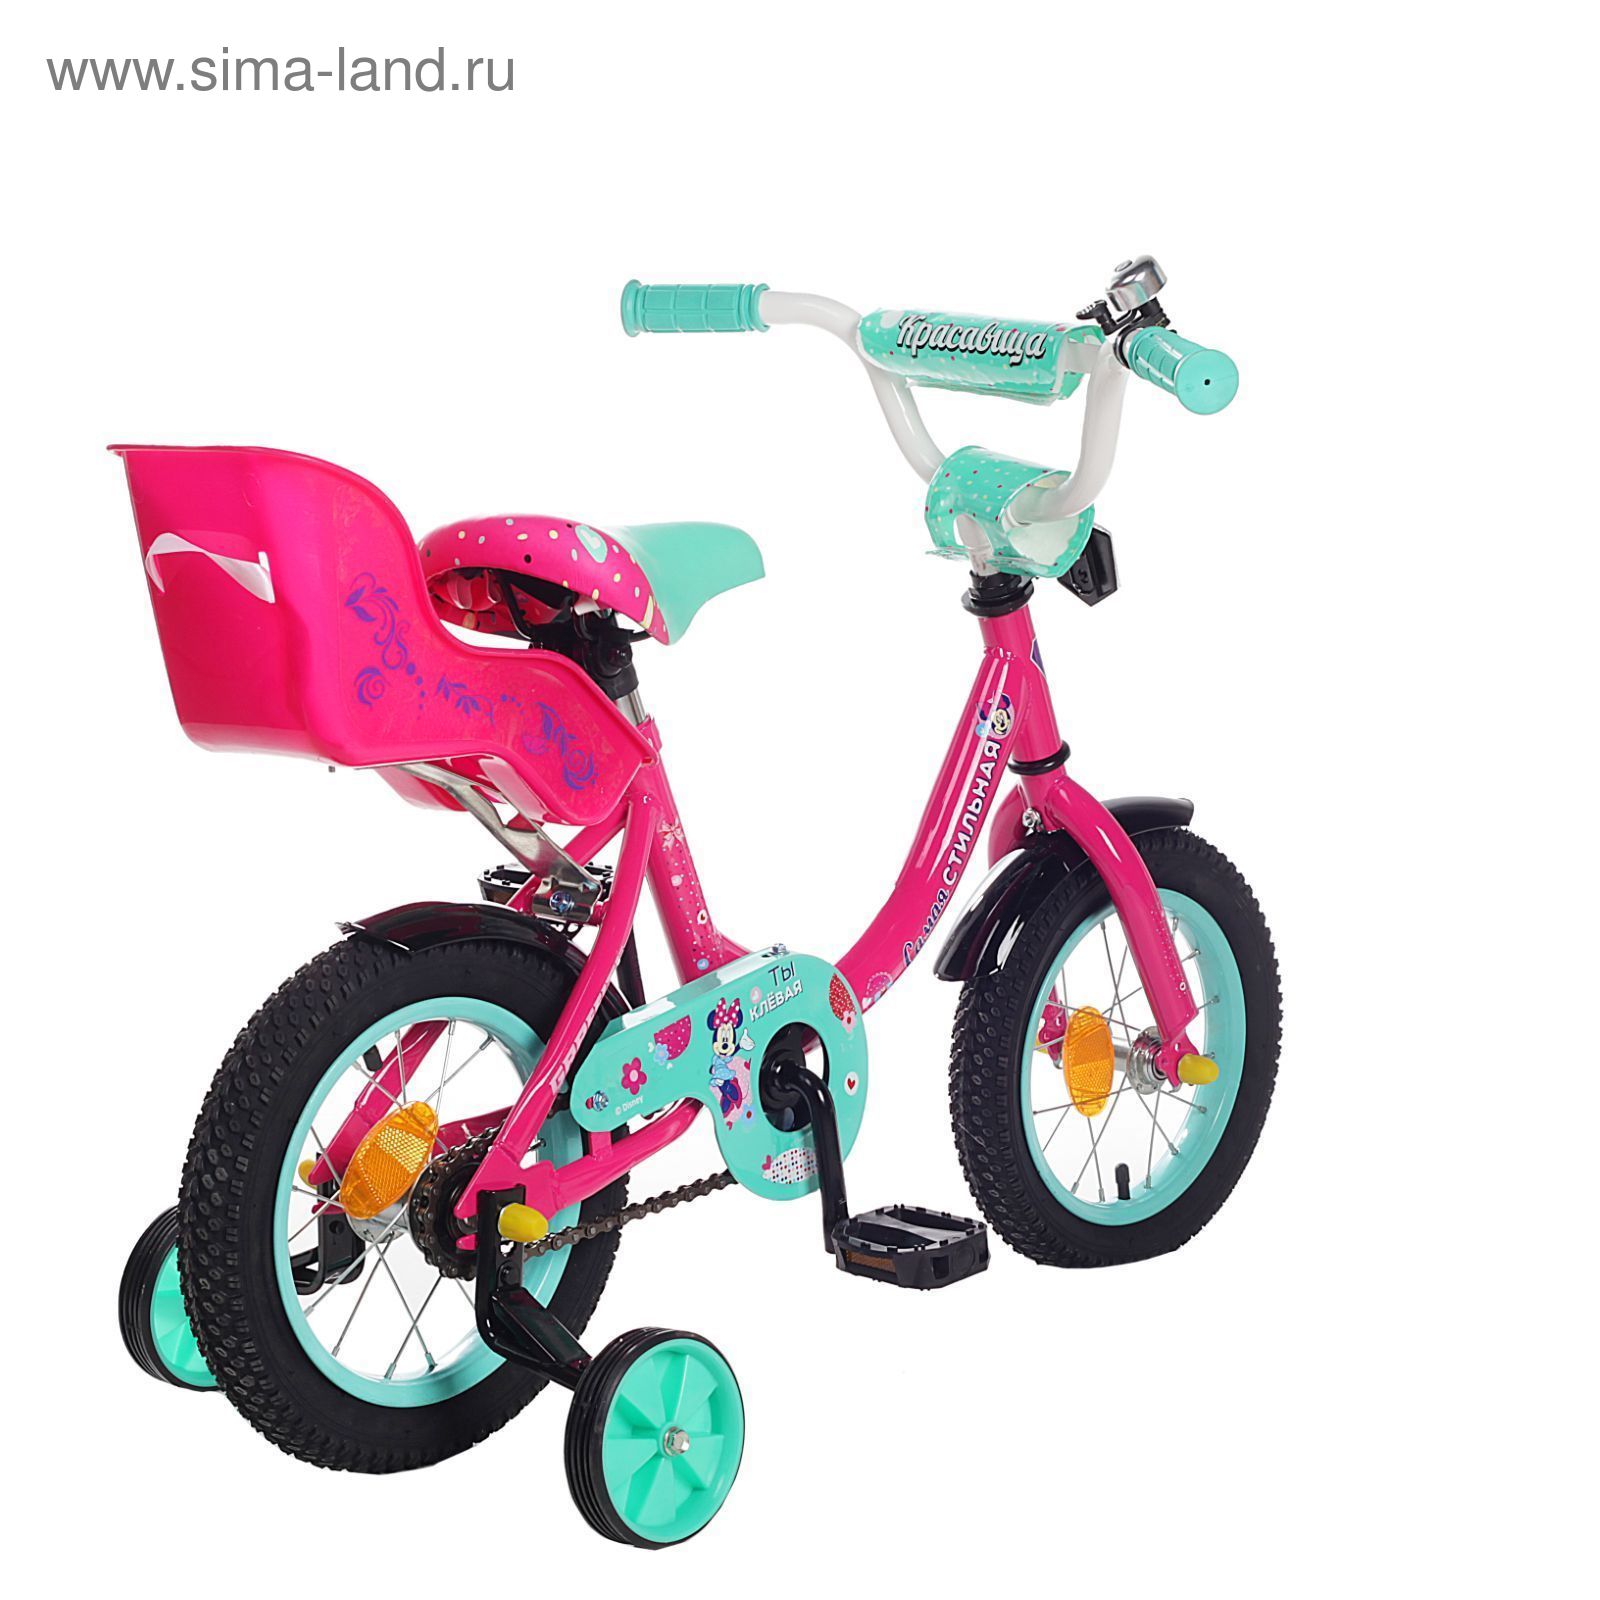 Велосипед двухколесный 12" GRAFFITI "Минни Маус", цвет: розовый